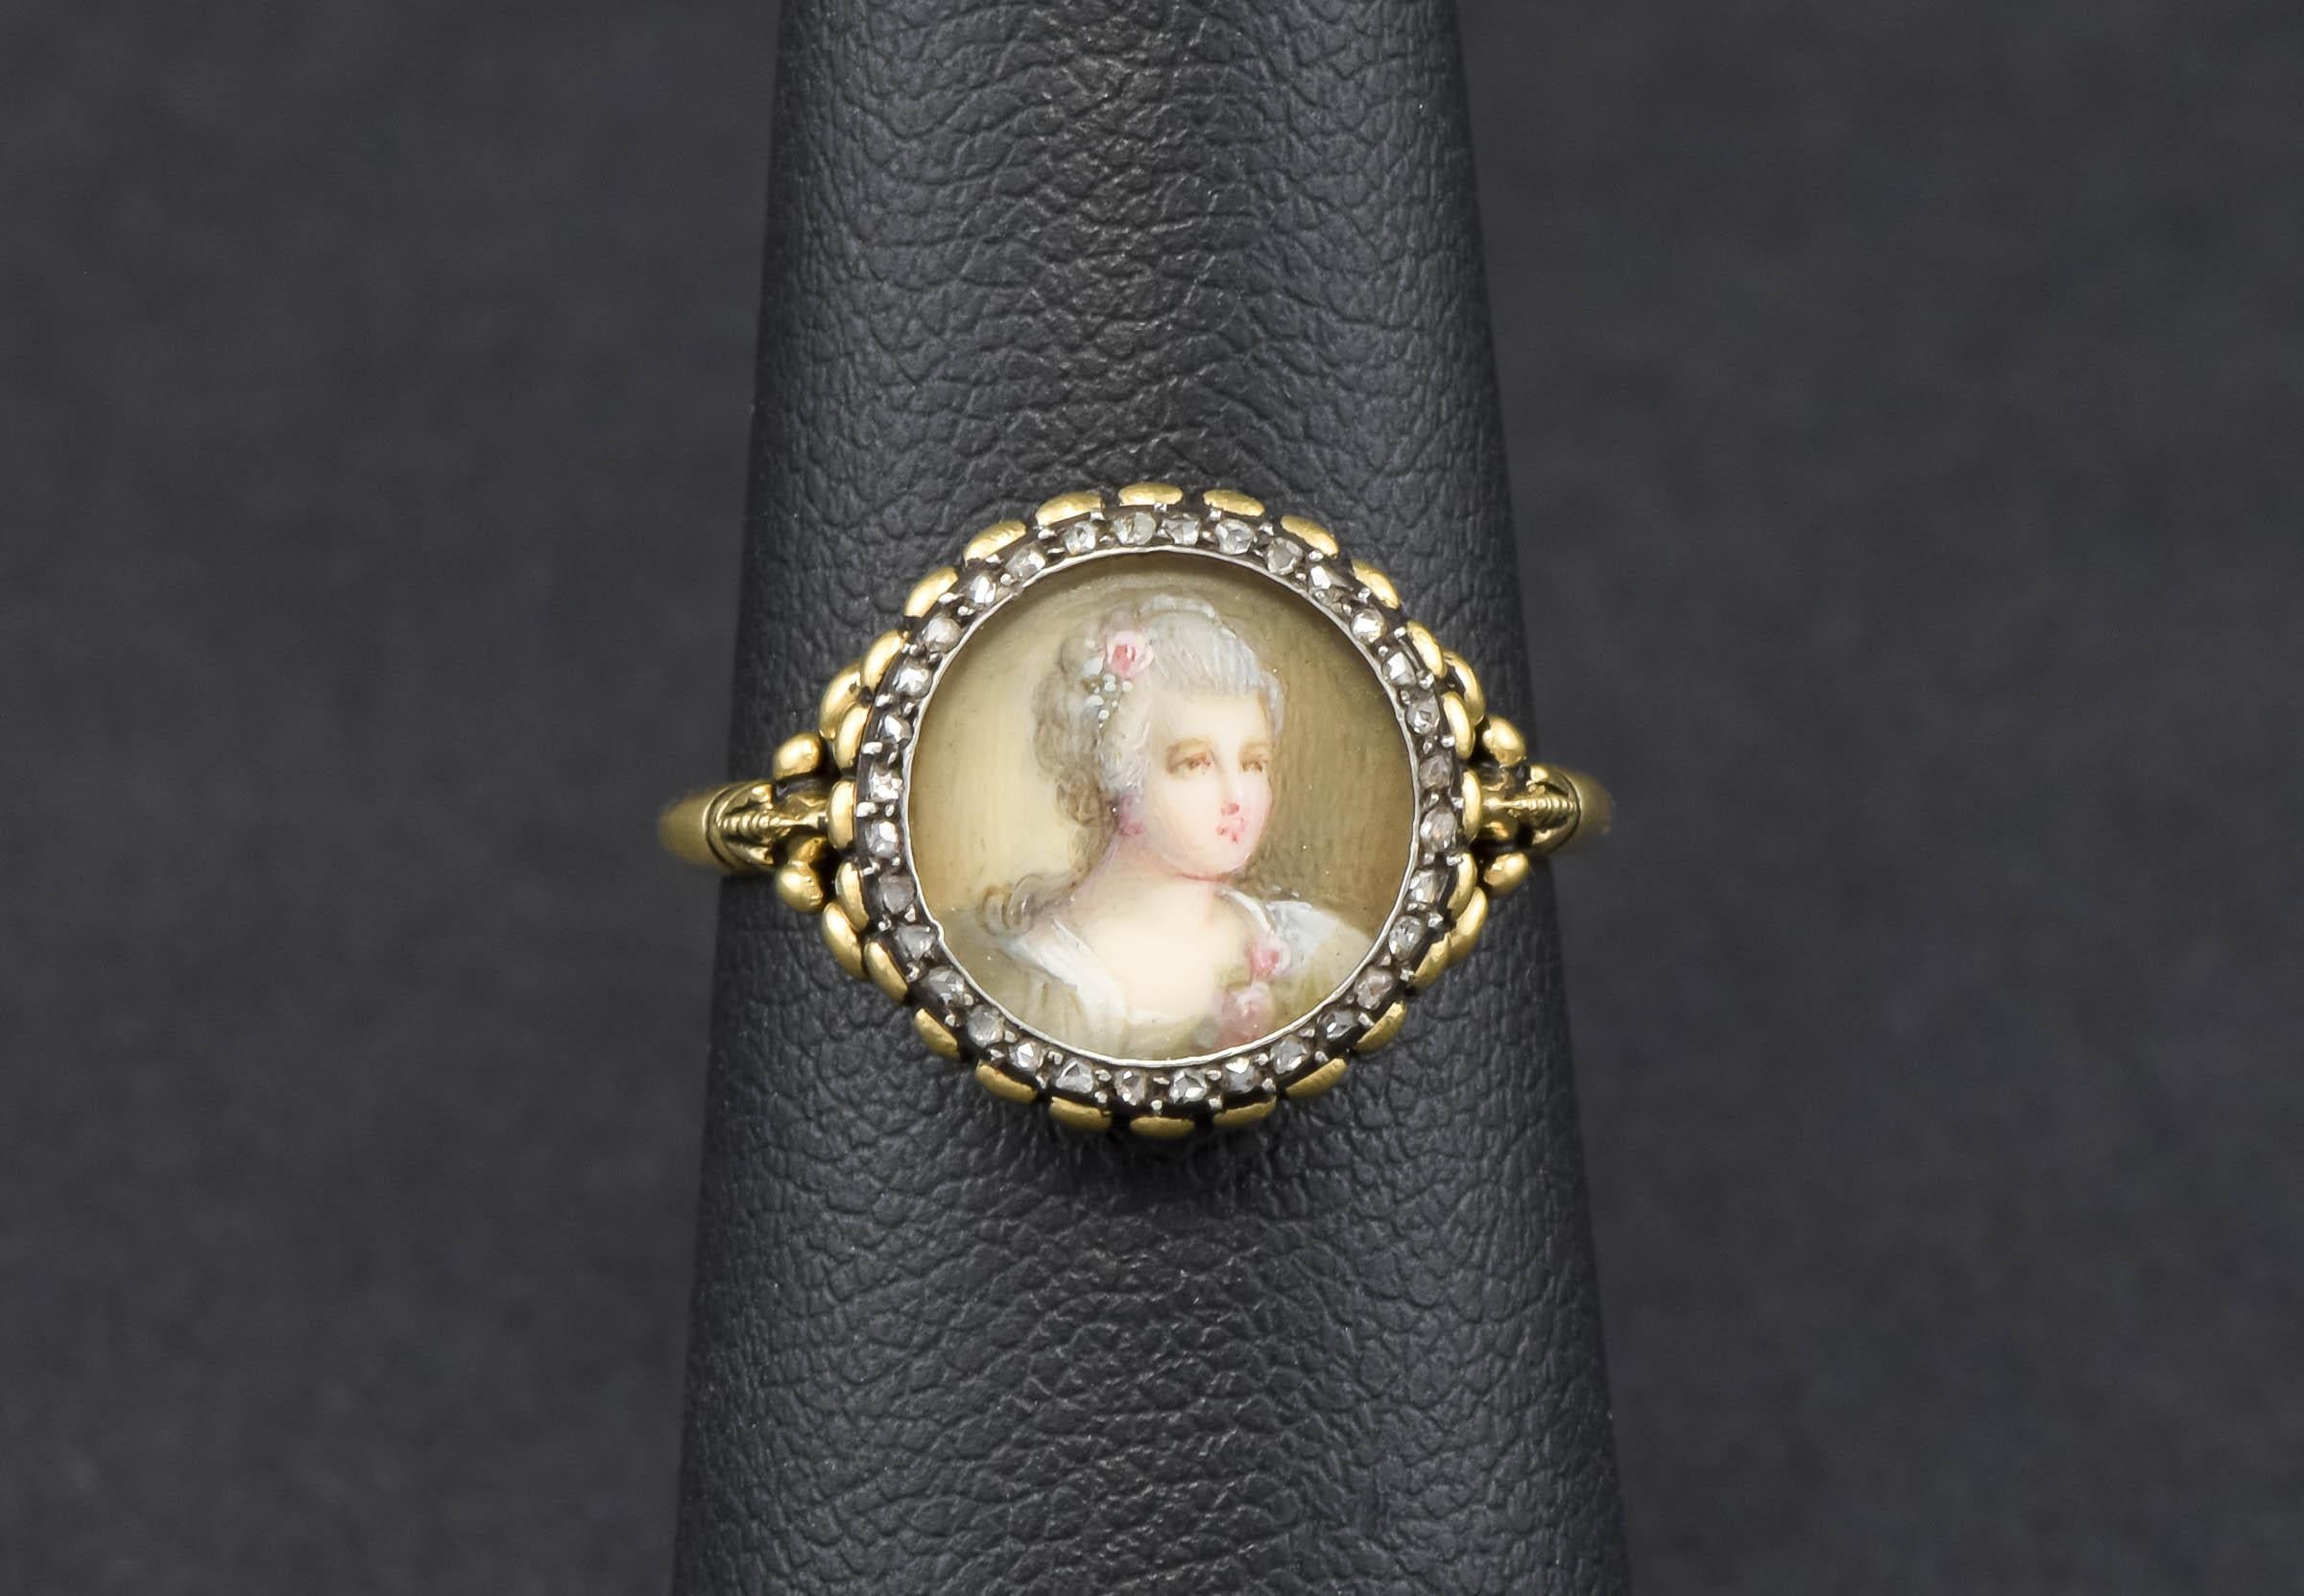 Dieser besondere Ring ist ein Unikat, das aus einer schönen antiken, handgemalten Porträt-Anstecknadel mit Diamanten gefertigt wurde.

Der aus 18-karätigem Gelbgold und Silber gefertigte Ring zeigt ein originales, handgemaltes Aquarellporträt einer